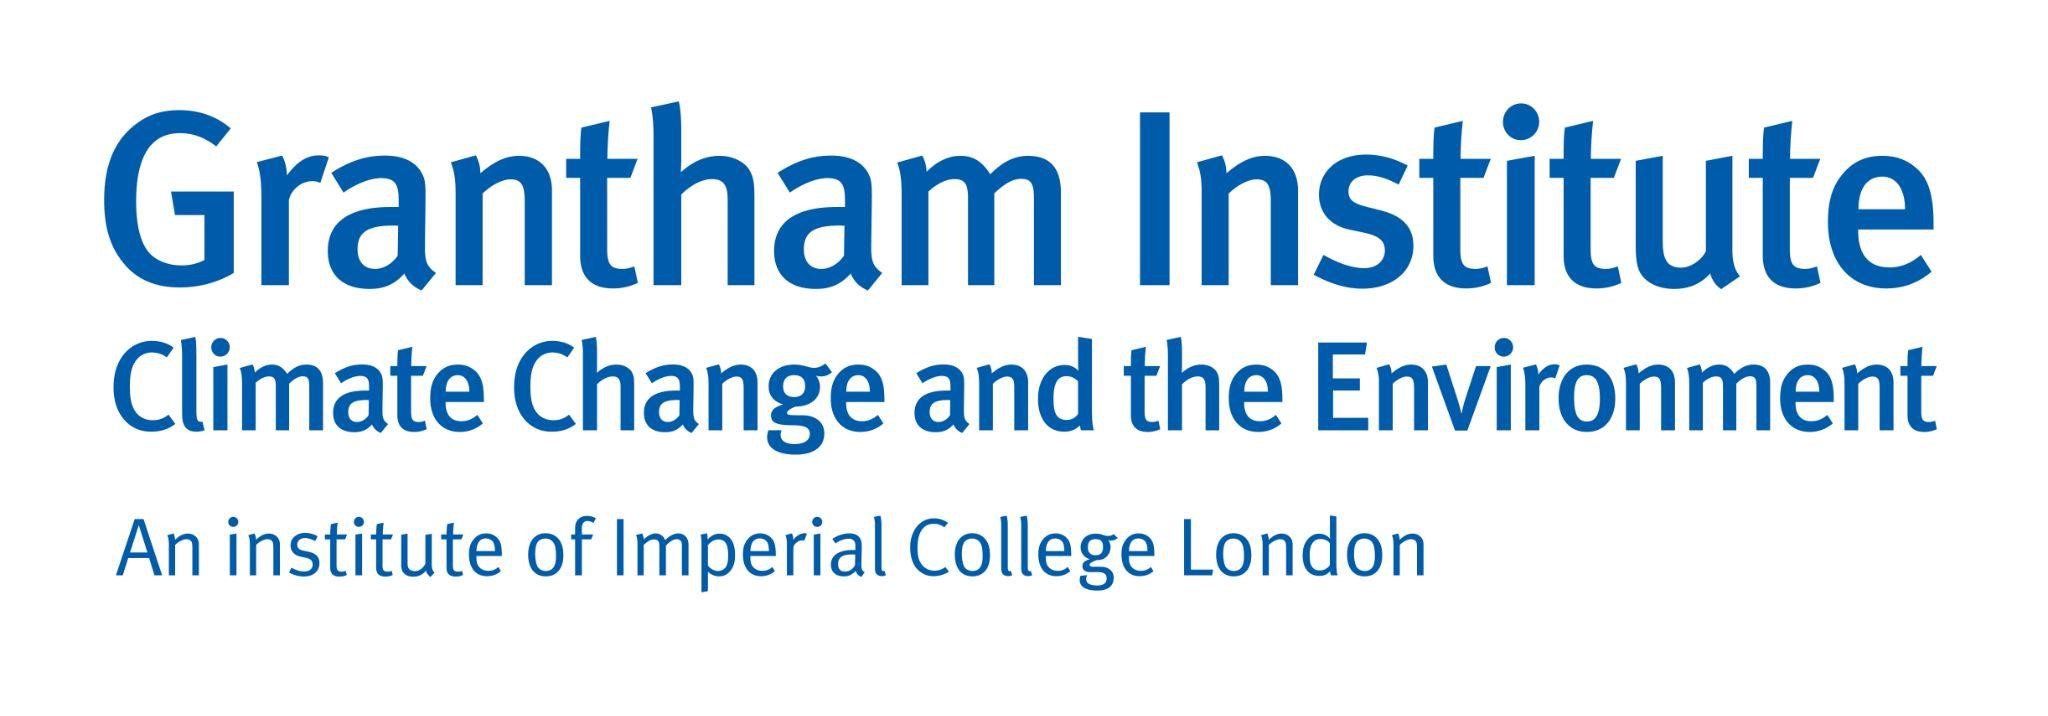 Grantham Institute